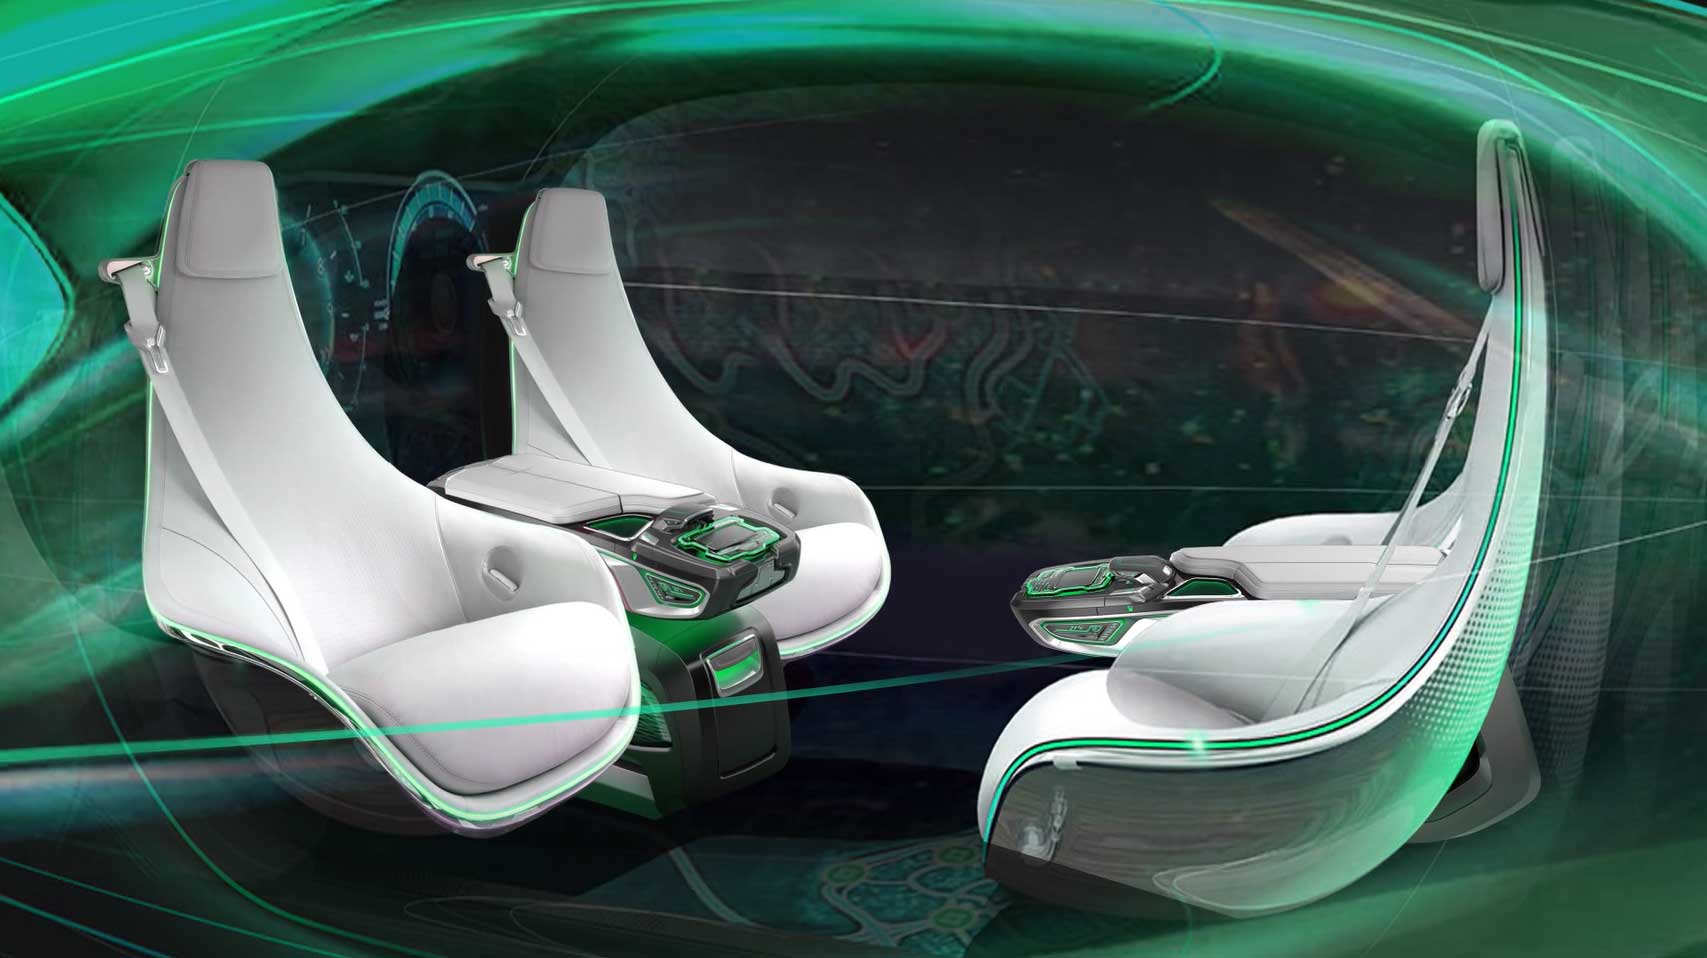 IAA Mobility 2021: Las tendencias para el interior de los automóviles del futuro